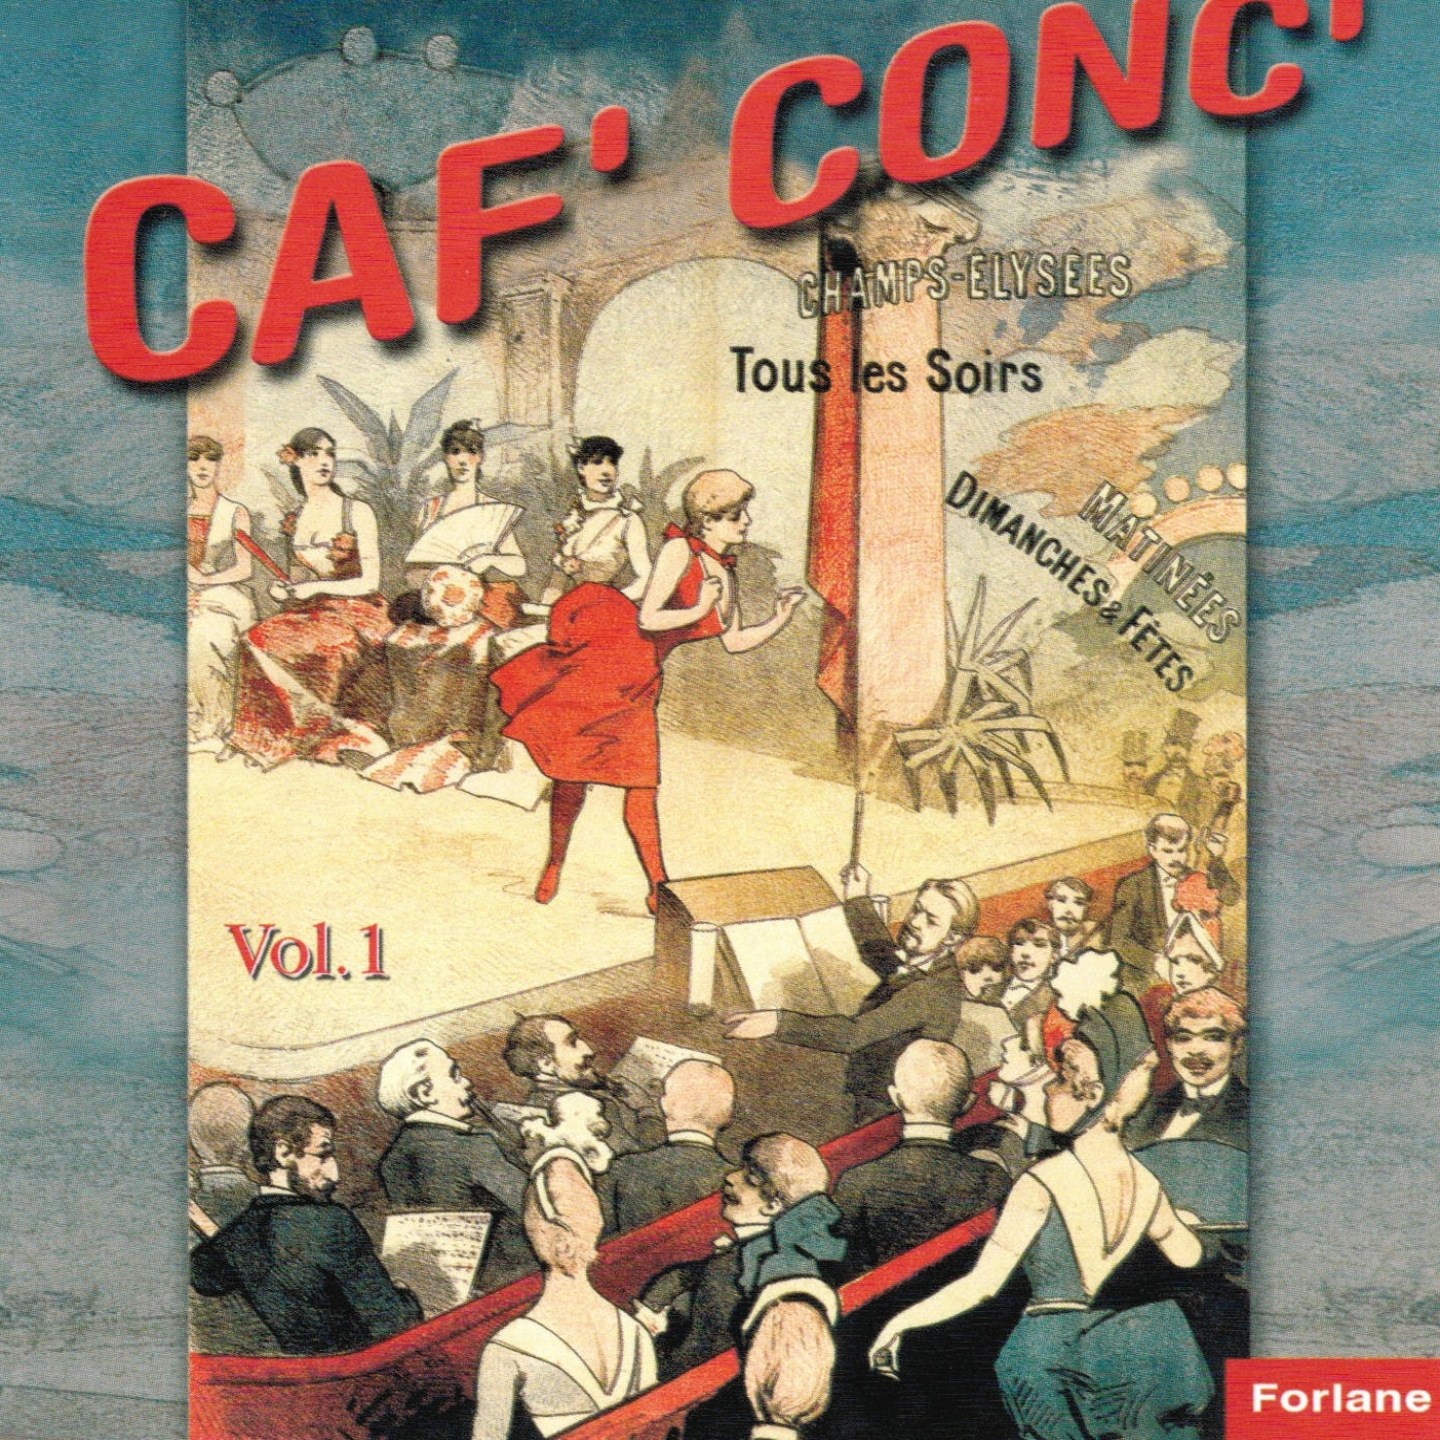 Caf' con, vol. 1 18641914 Chansons cafe concerts dans les estaminets